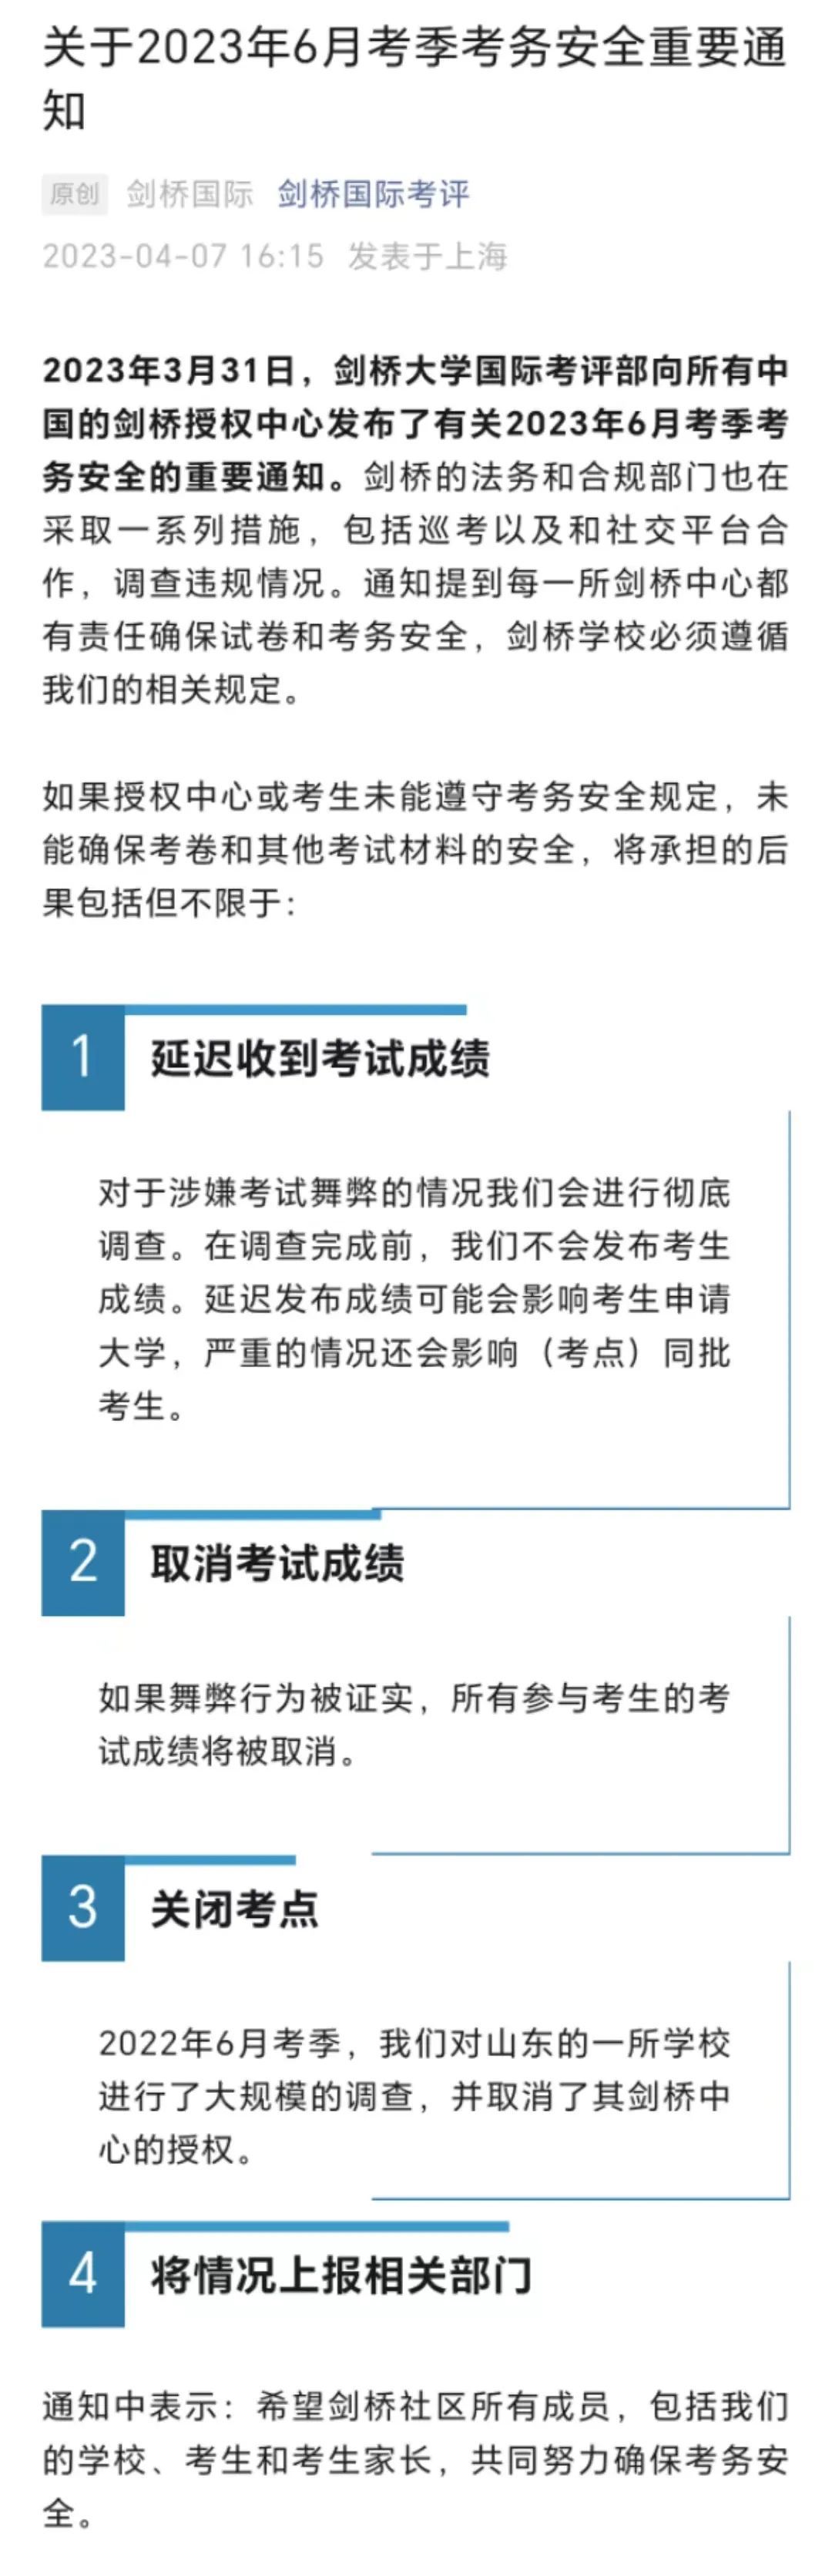 中国青年政治学院2022年硕士研究生招生考试进入复试资格审核考生名单及特别提示